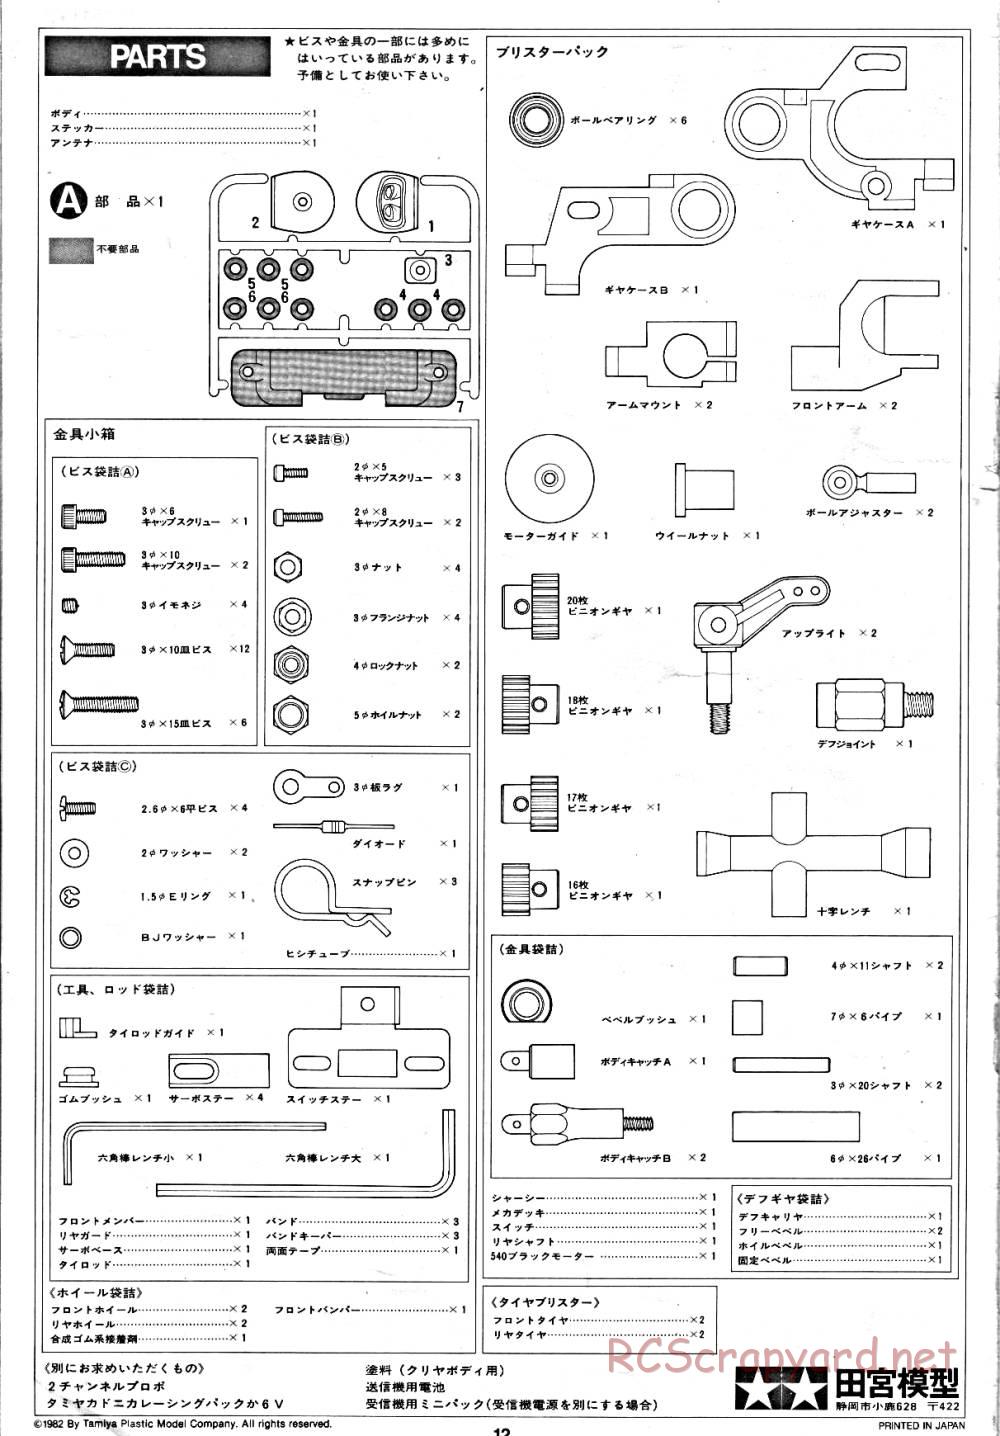 Tamiya - Tornado - RM MK.3 - 58032 - Manual - Page 12